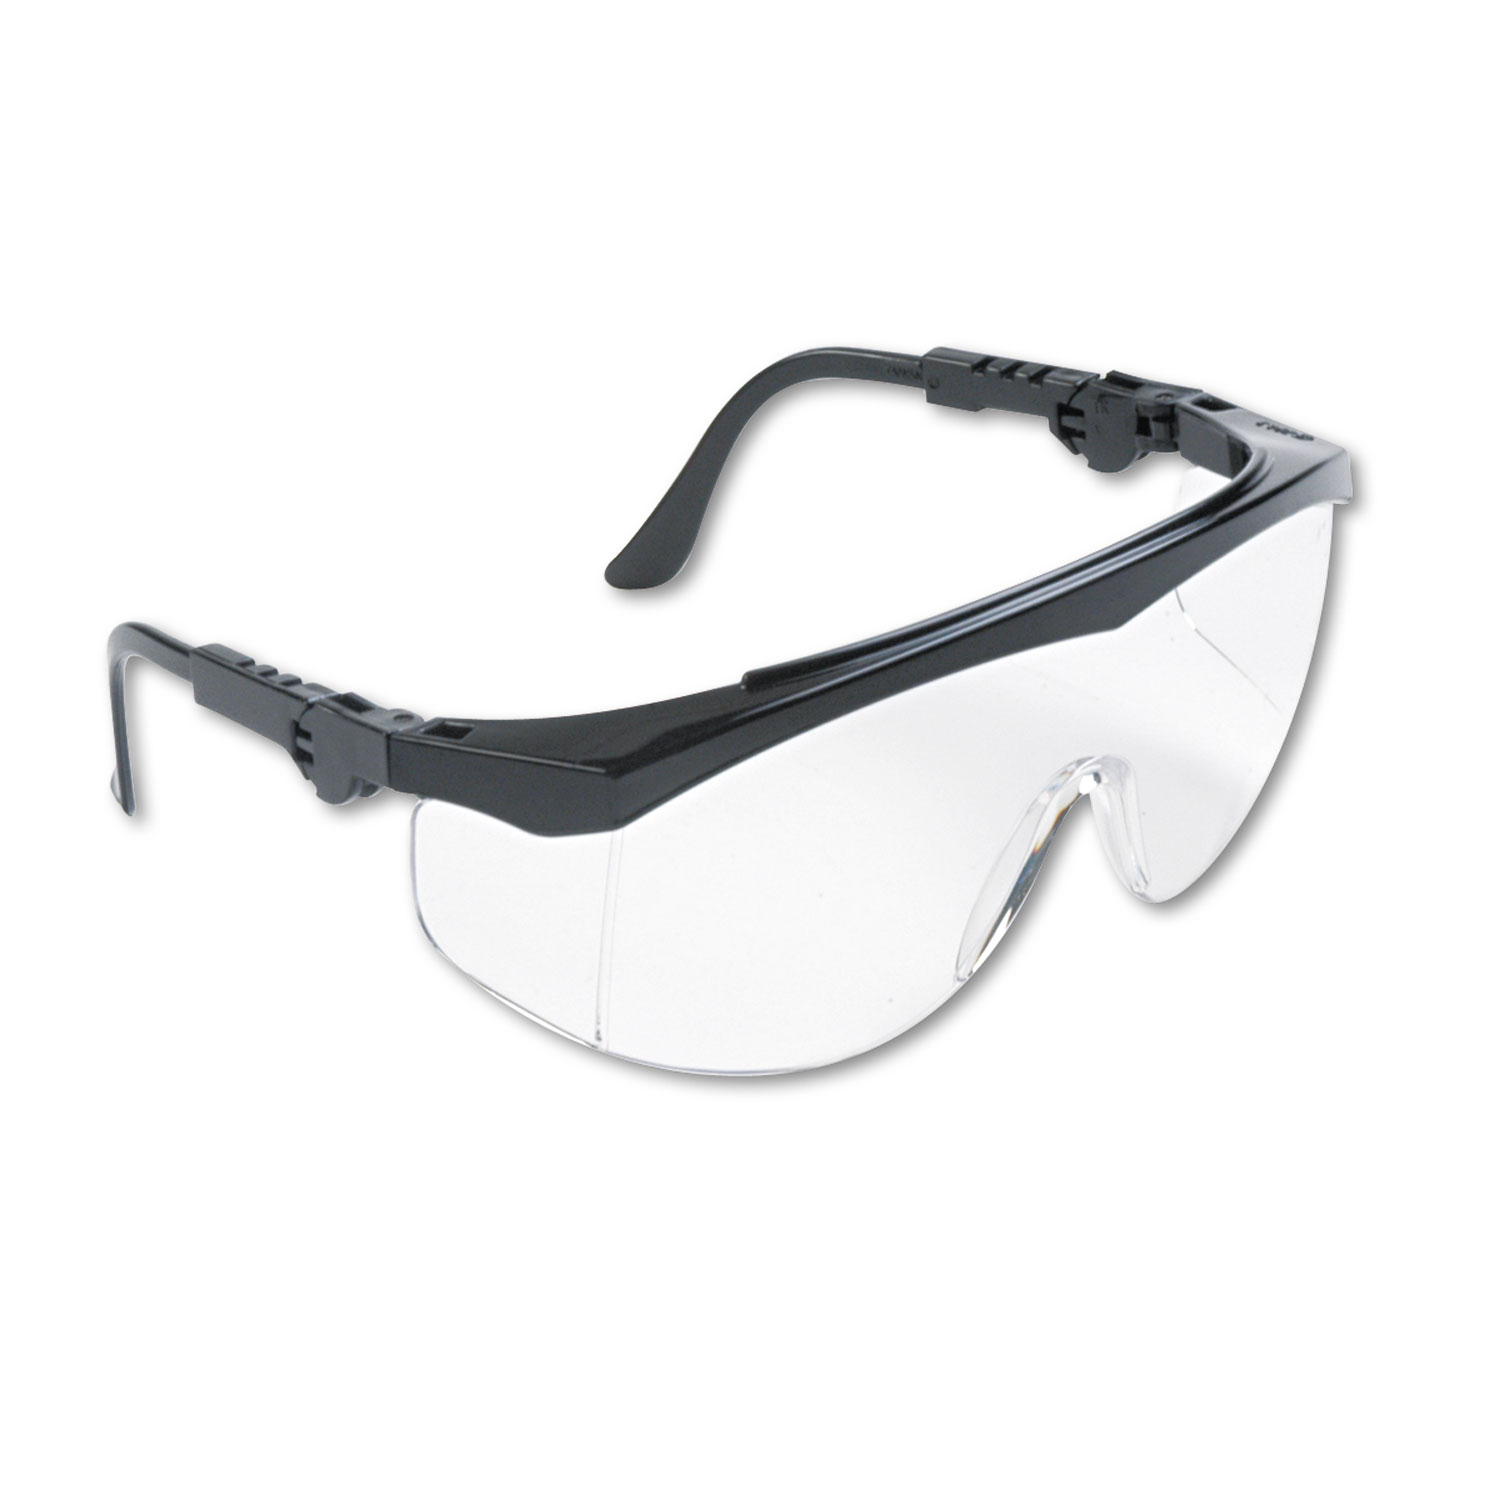  MCR Safety TK110 Tomahawk Wraparound Safety Glasses, Black Nylon Frame, Clear Lens, 12/Box (CRWTK110) 